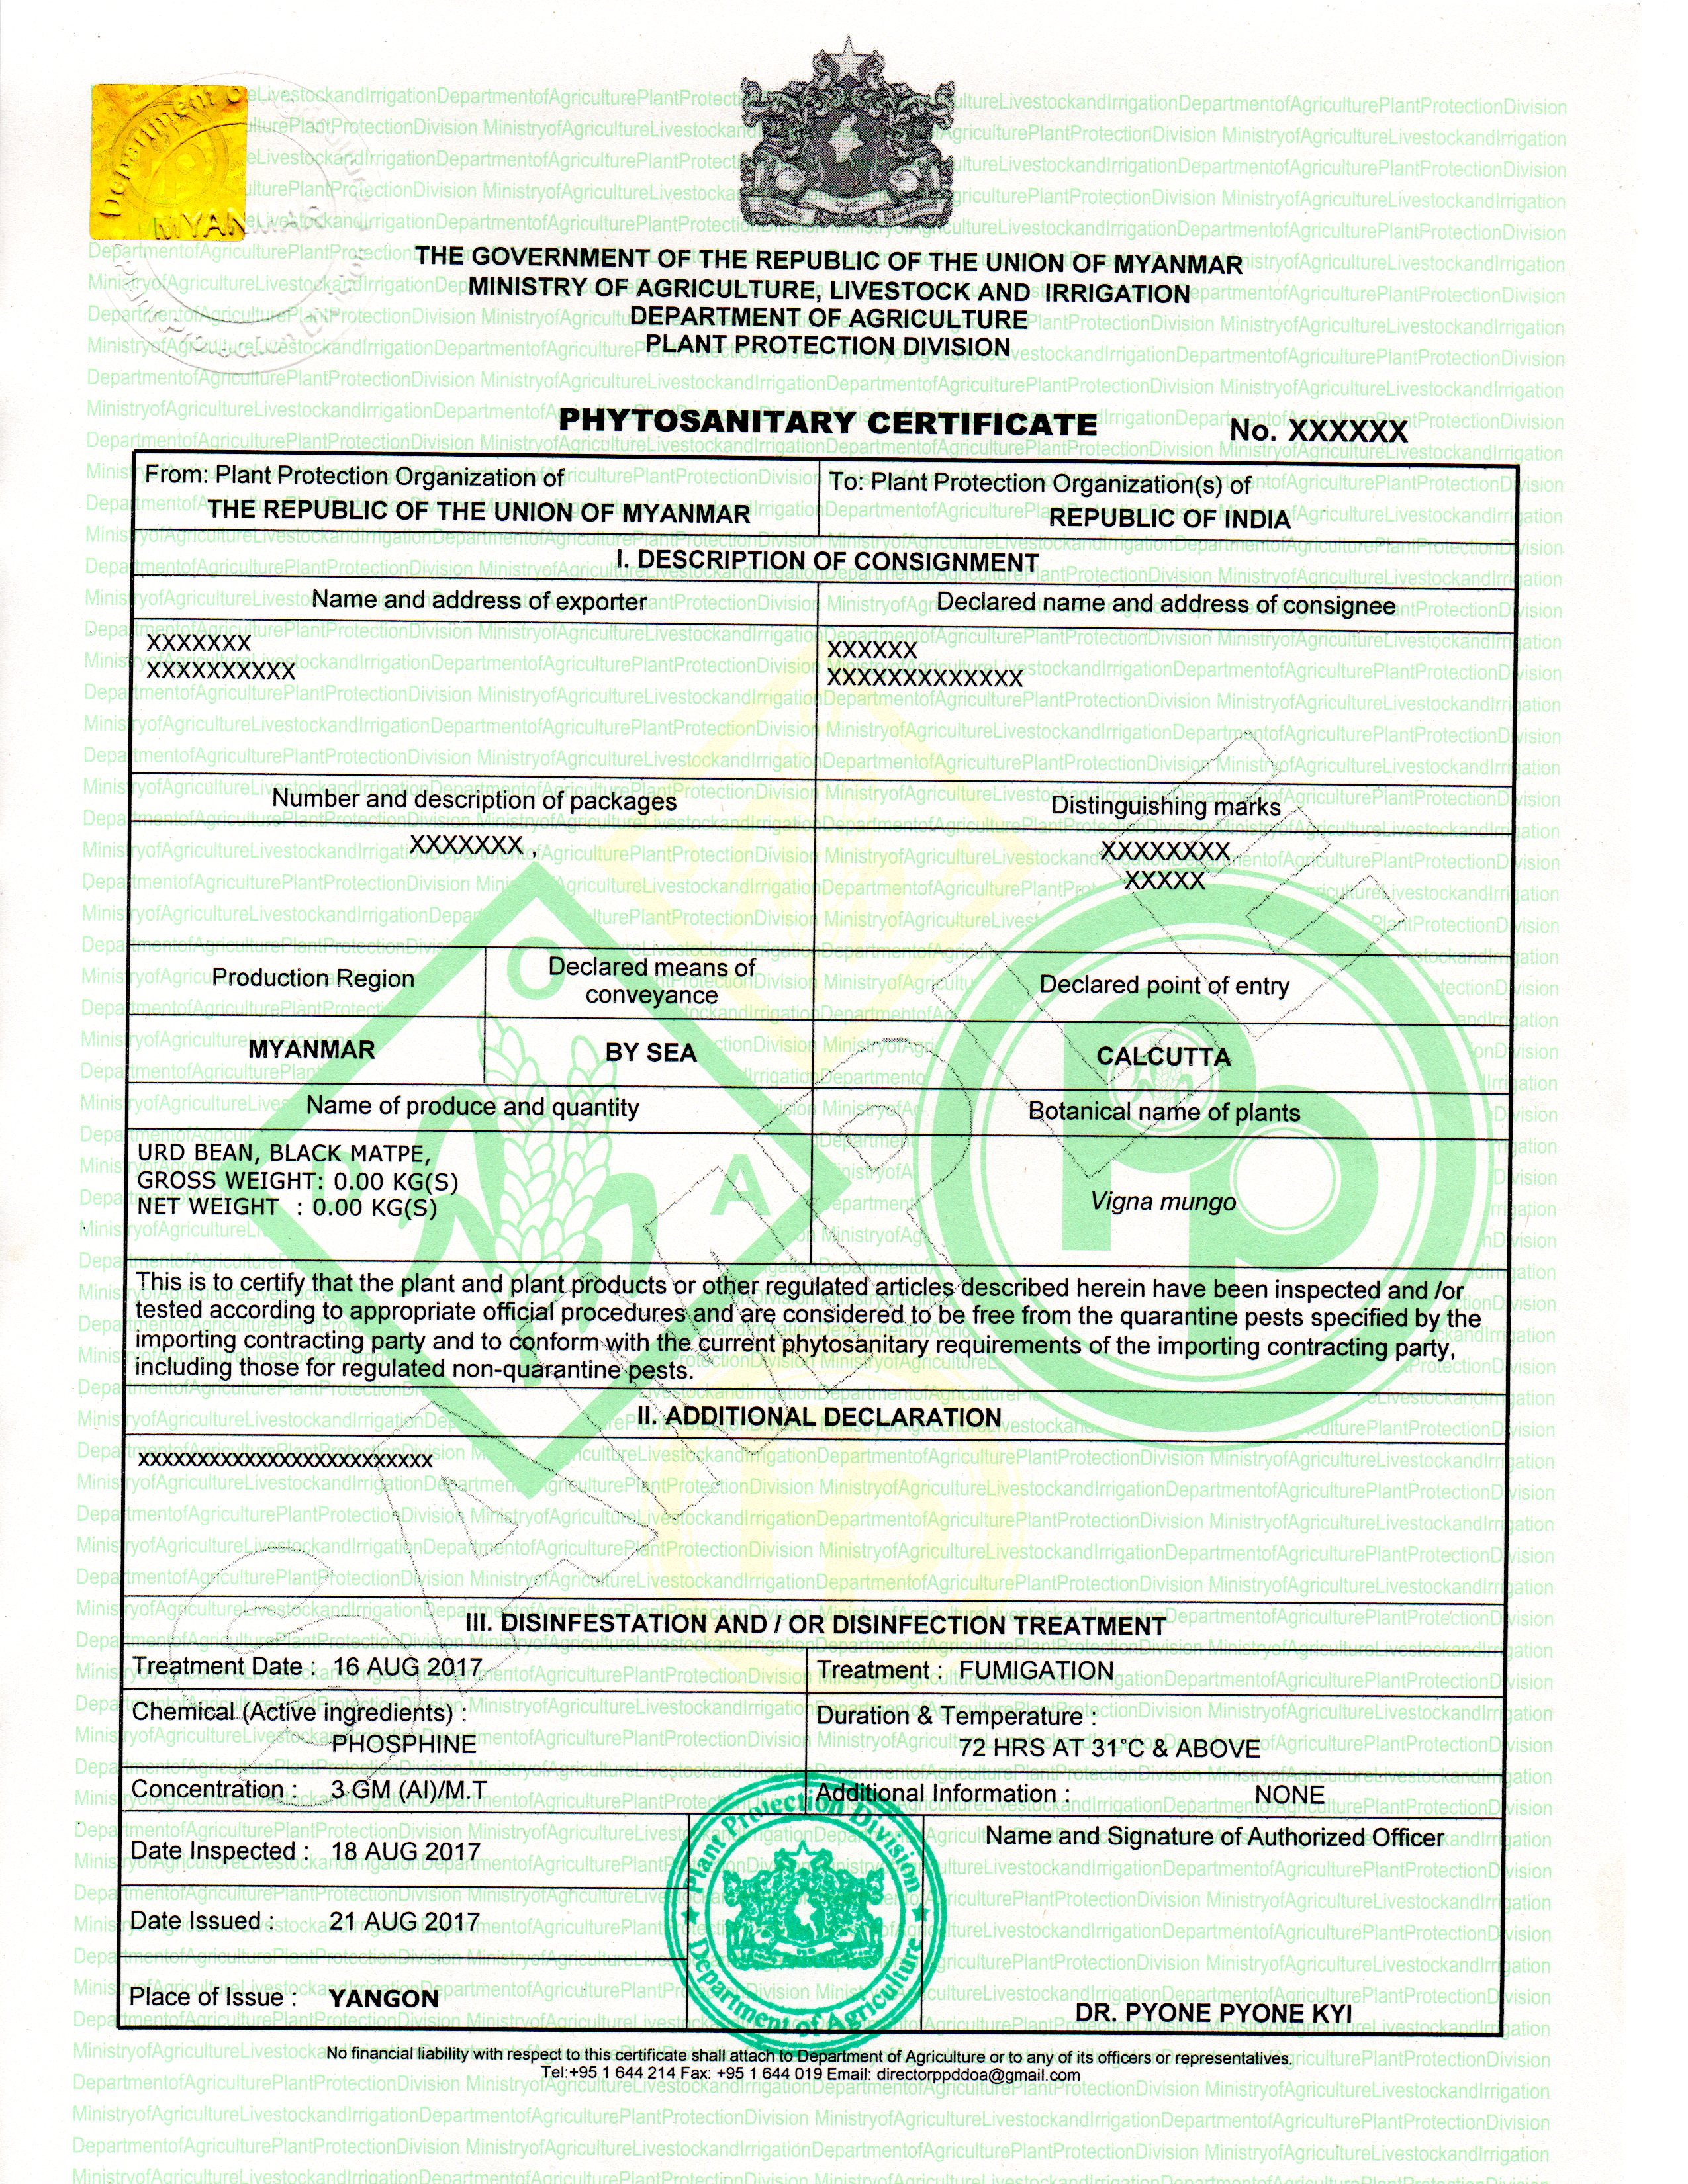 Phytosanitary Certificate 